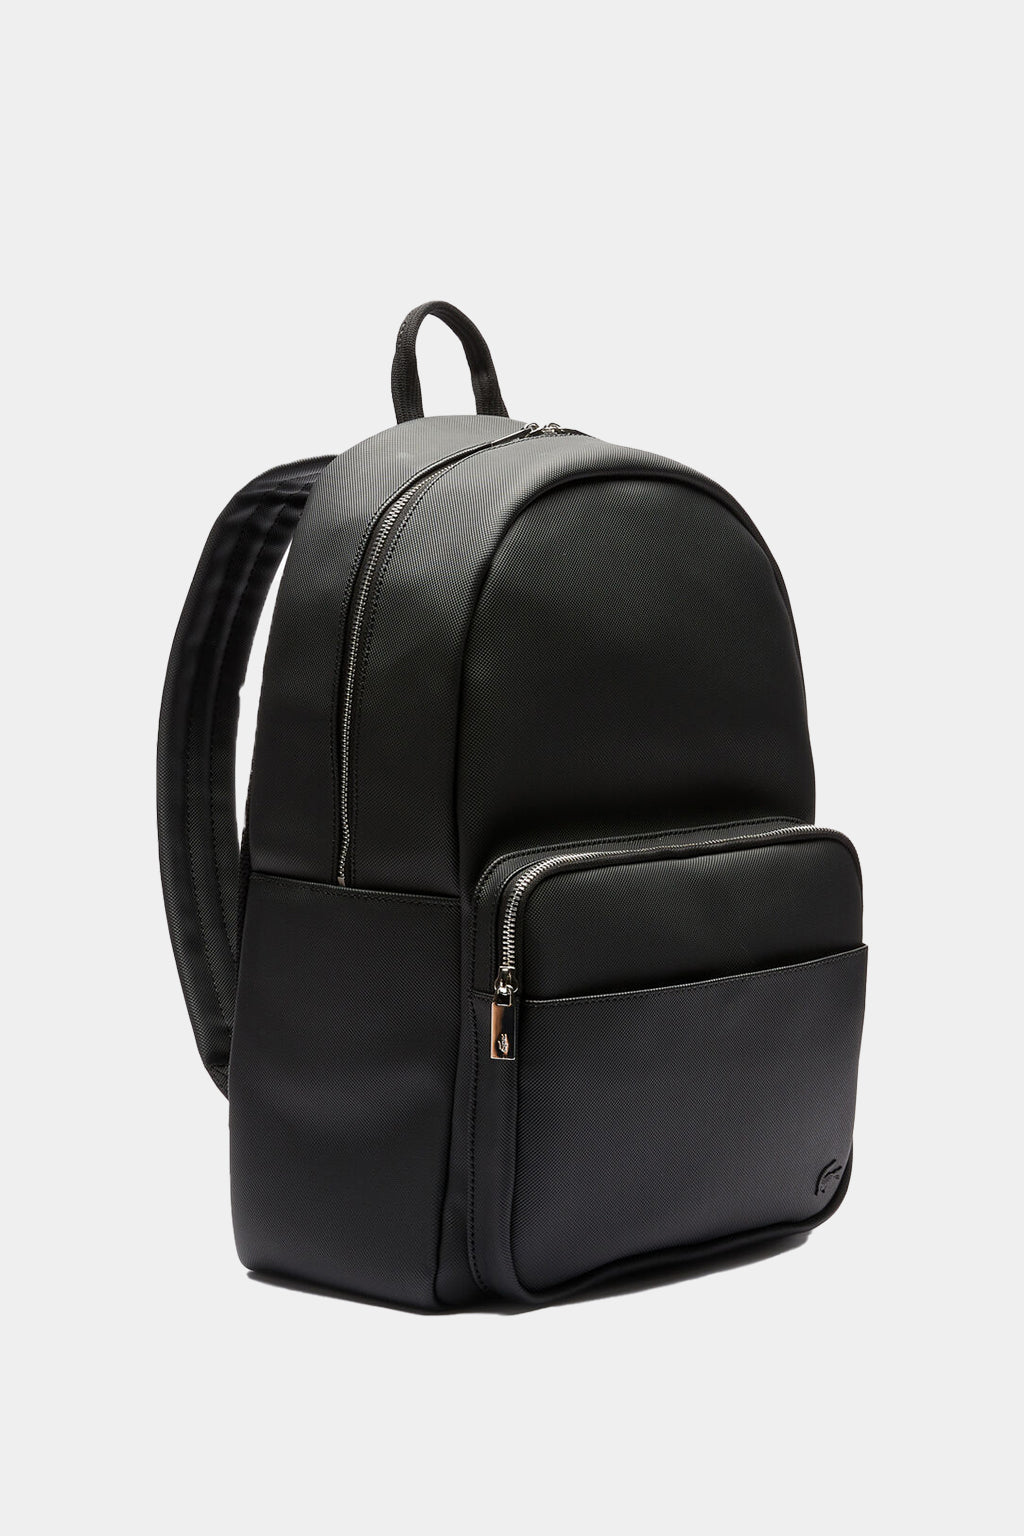 Lacoste - Men's Classic Petit Piqué Backpack